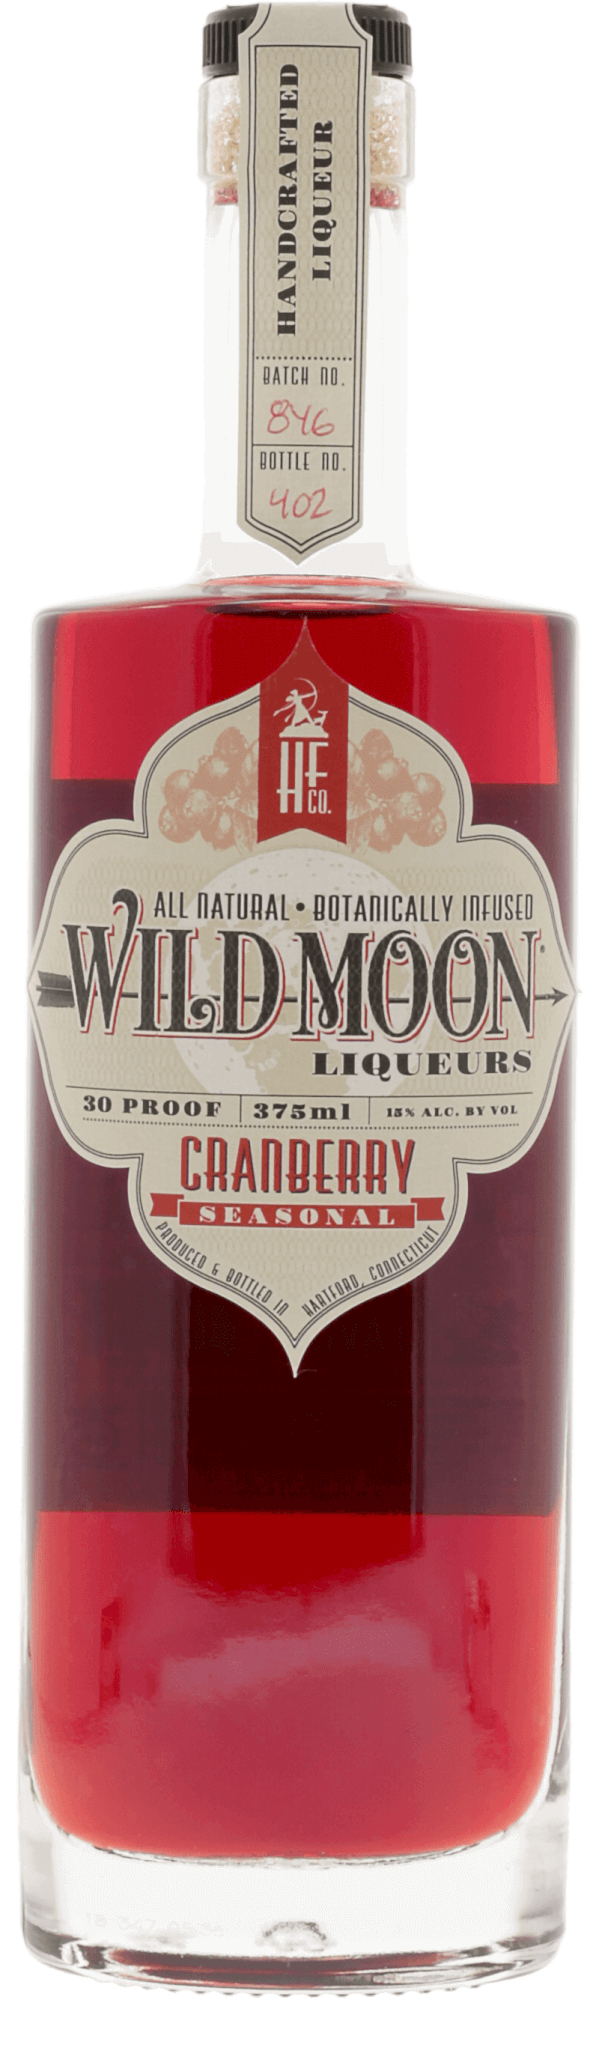 Wild Moon Liqueurs Cranberry